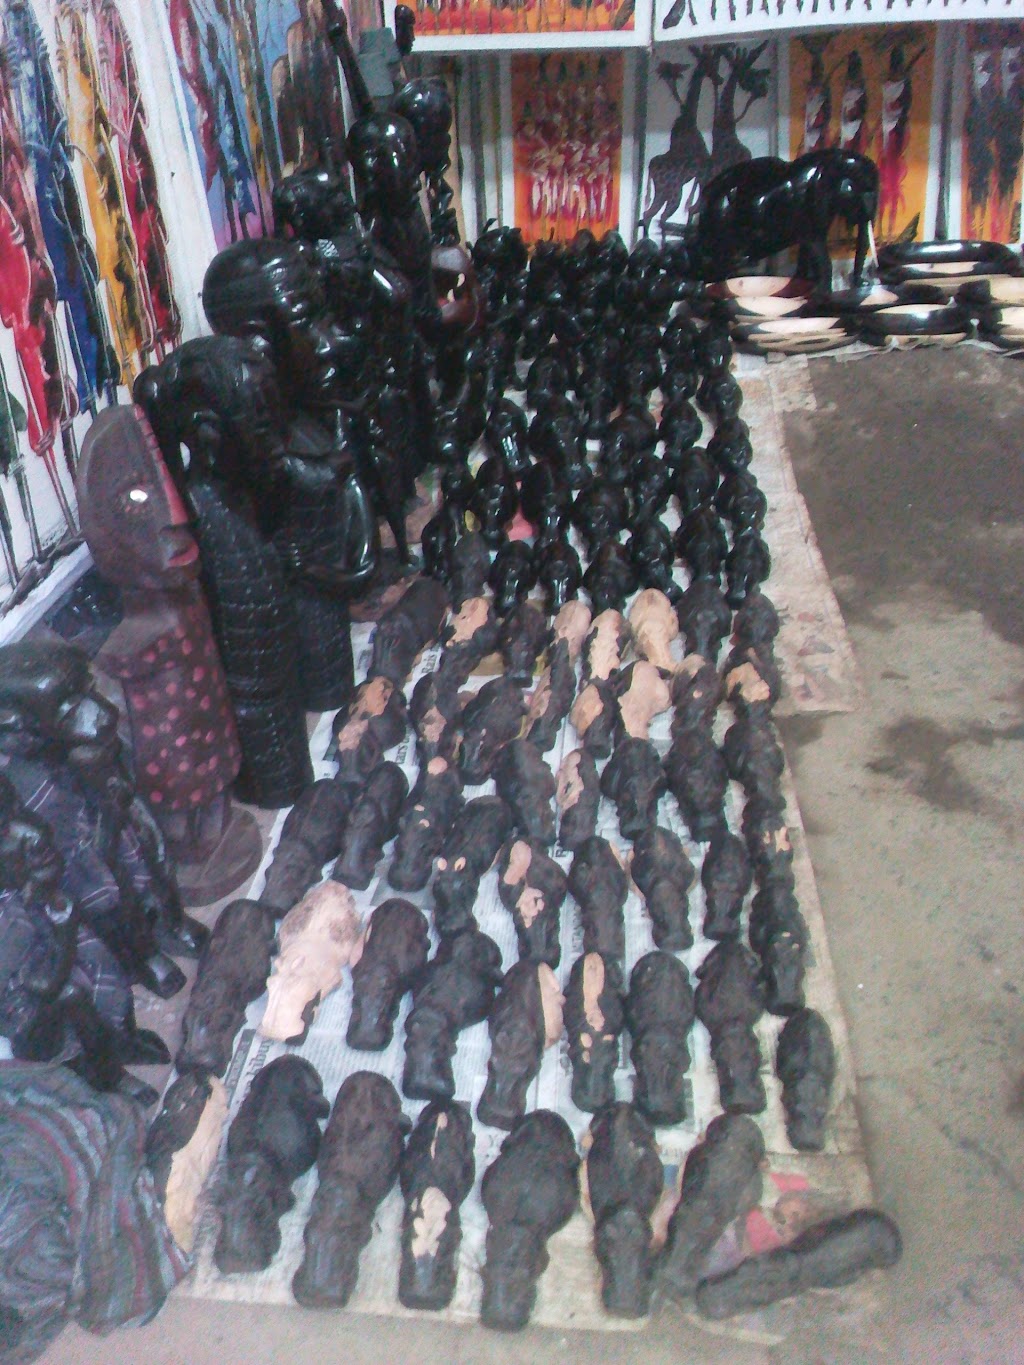 Maasai Market Curios&crafts (Vinyagon) | Fire Rd, Egg Harbor Township, NJ 08234 | Phone: 0744 363 233